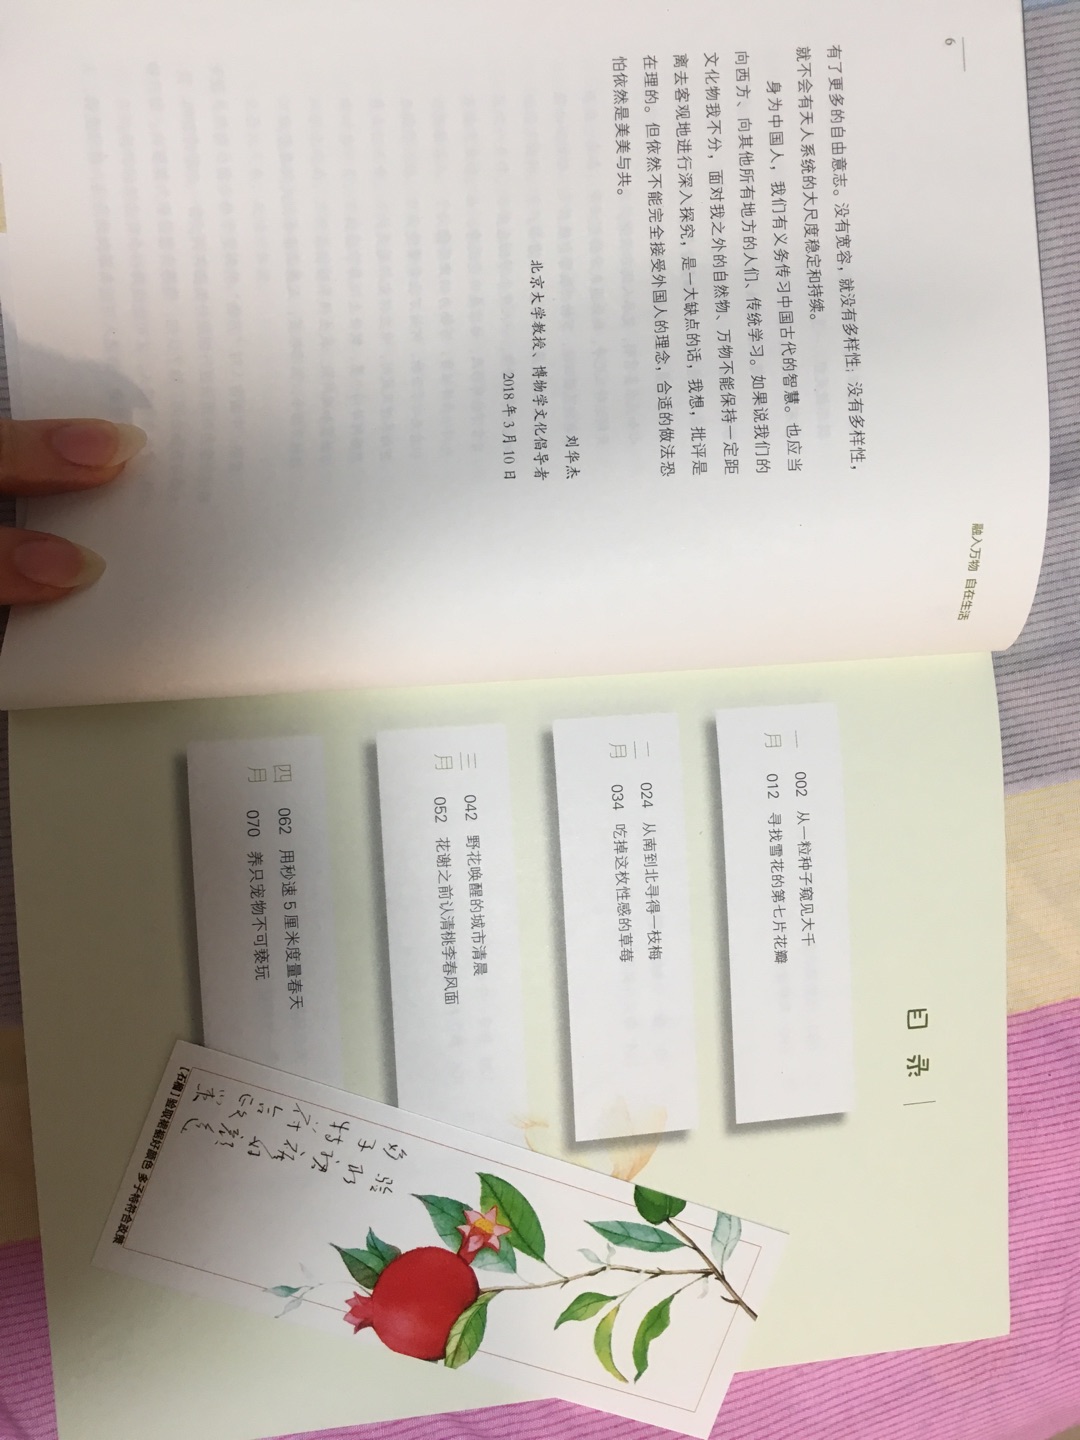 刘老师做序的书，慢慢看(●?●)?“博物式生存”